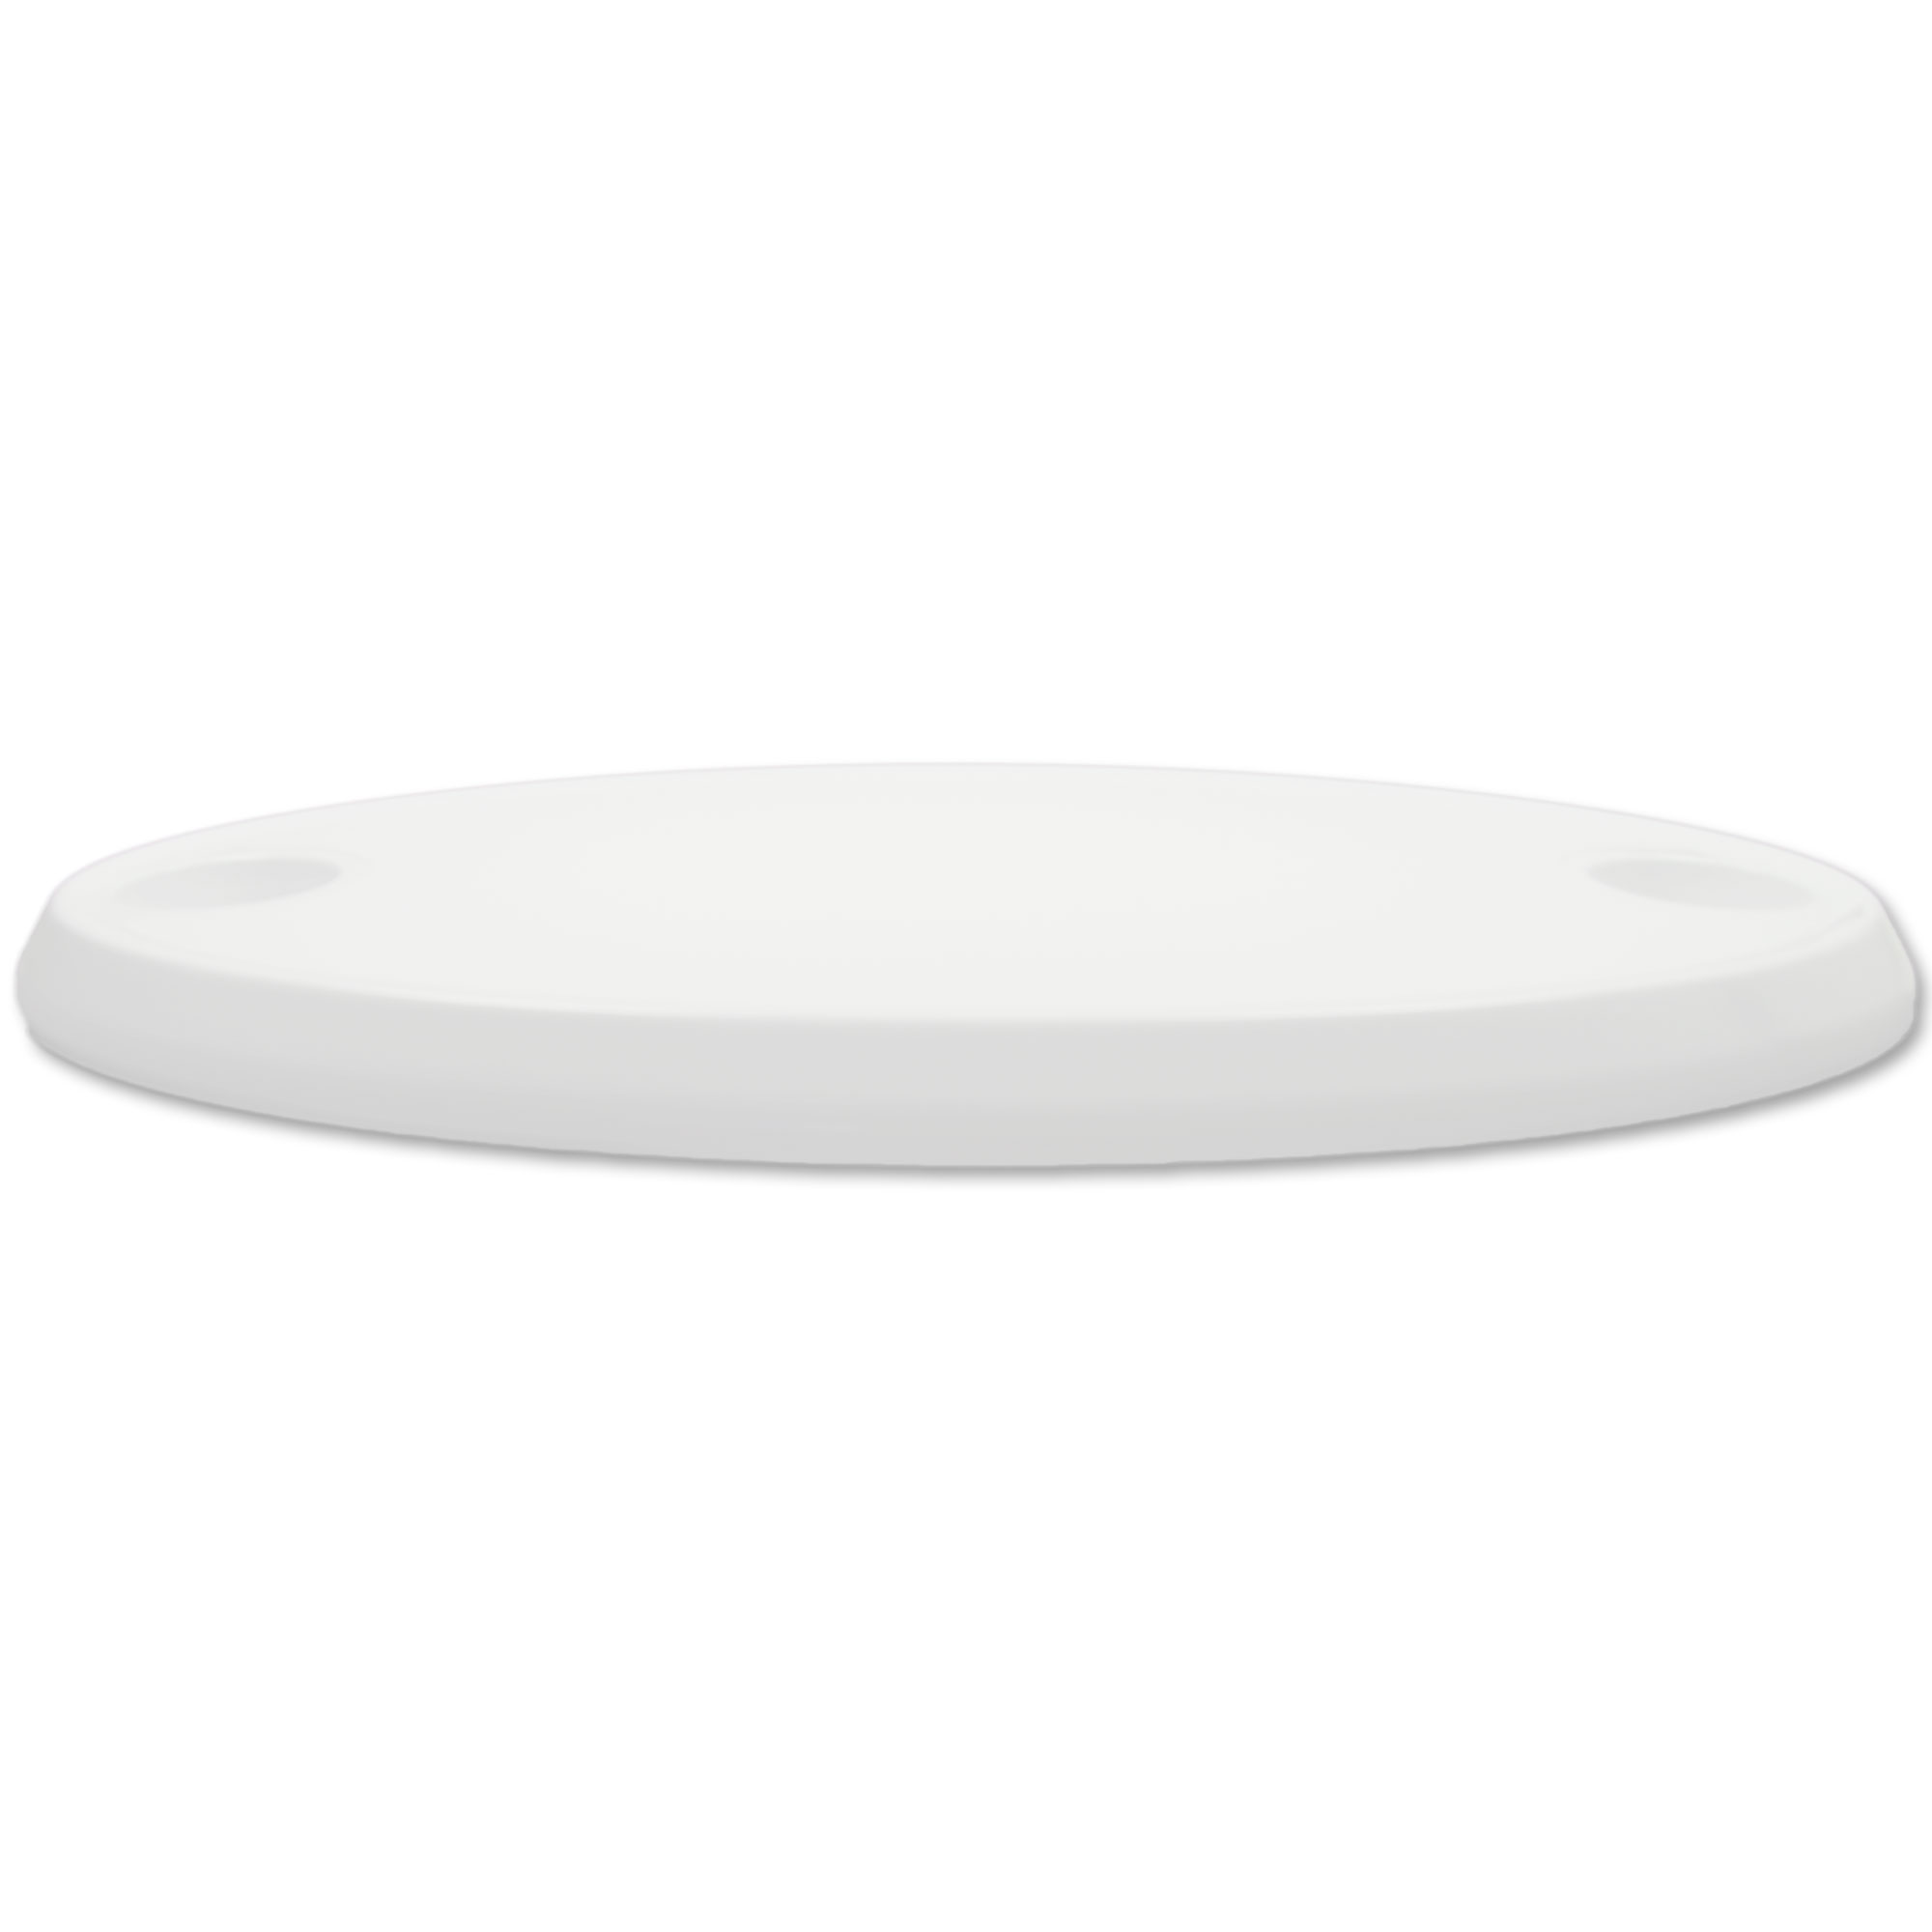 Tischplatte oval, Kunststoff Weiß mit Getränkehaltern, 76 x 45cm